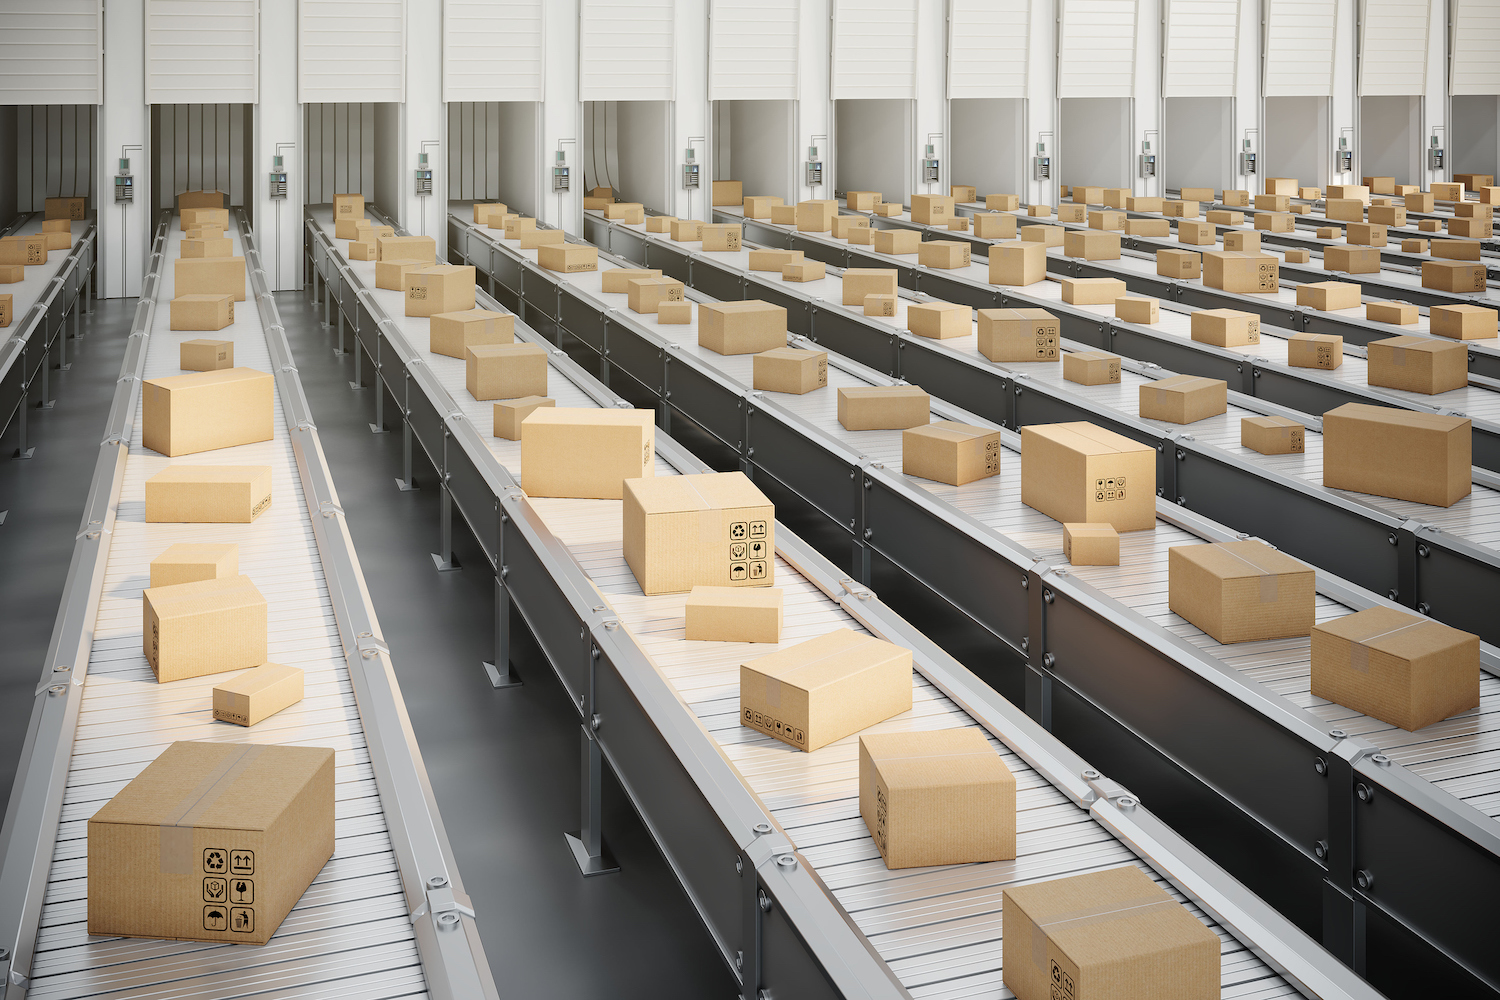 Cajas en cinta transportadora al muelle de carga de camiones en el almacén de distribución de envío.